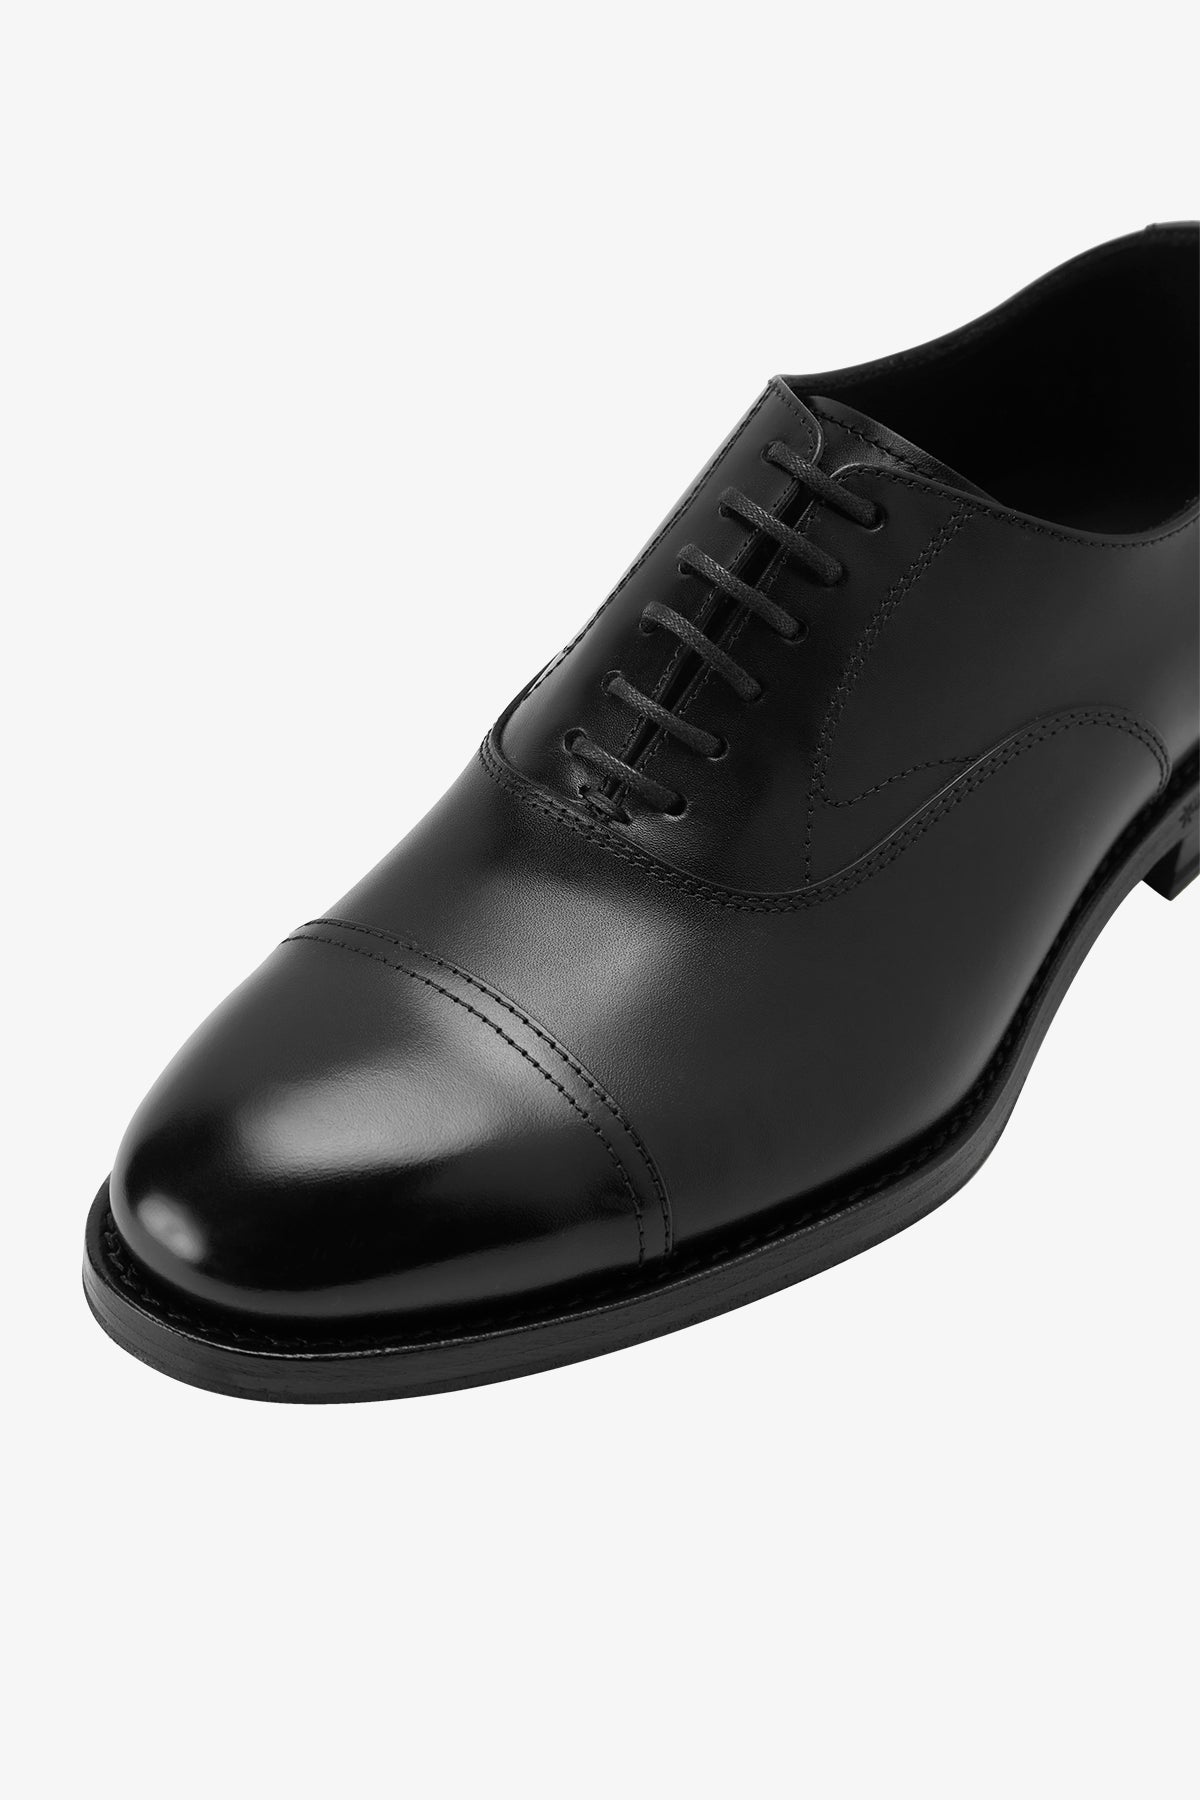 Oxford - Black Shoe